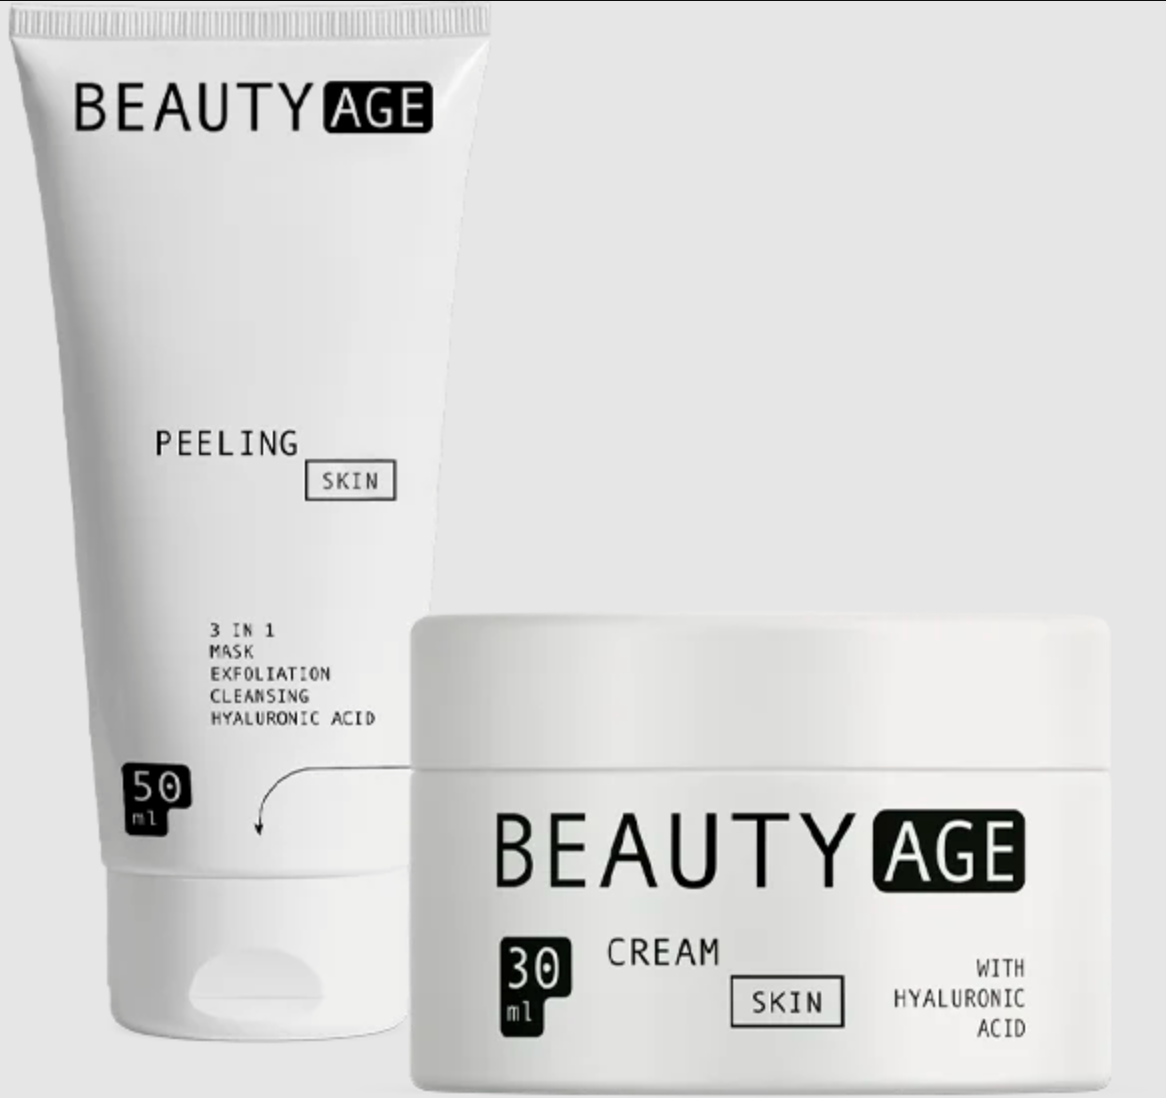 Beauty Age Skin - opinie użytkowników forum